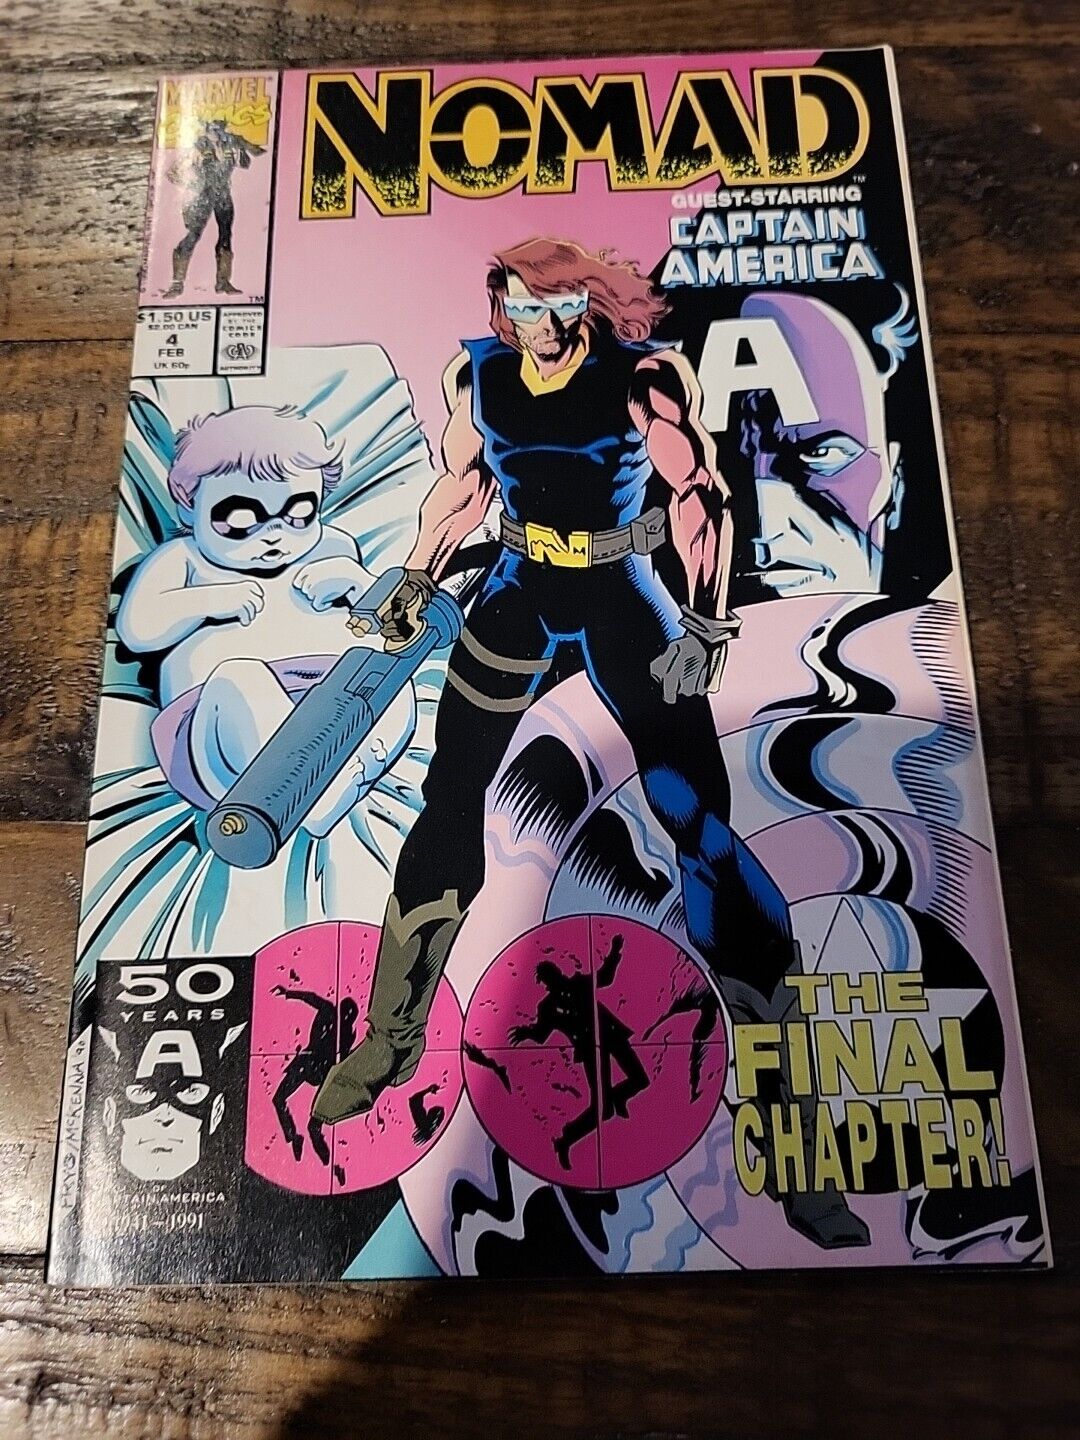 Nomad #4 (Marvel, February 1991)